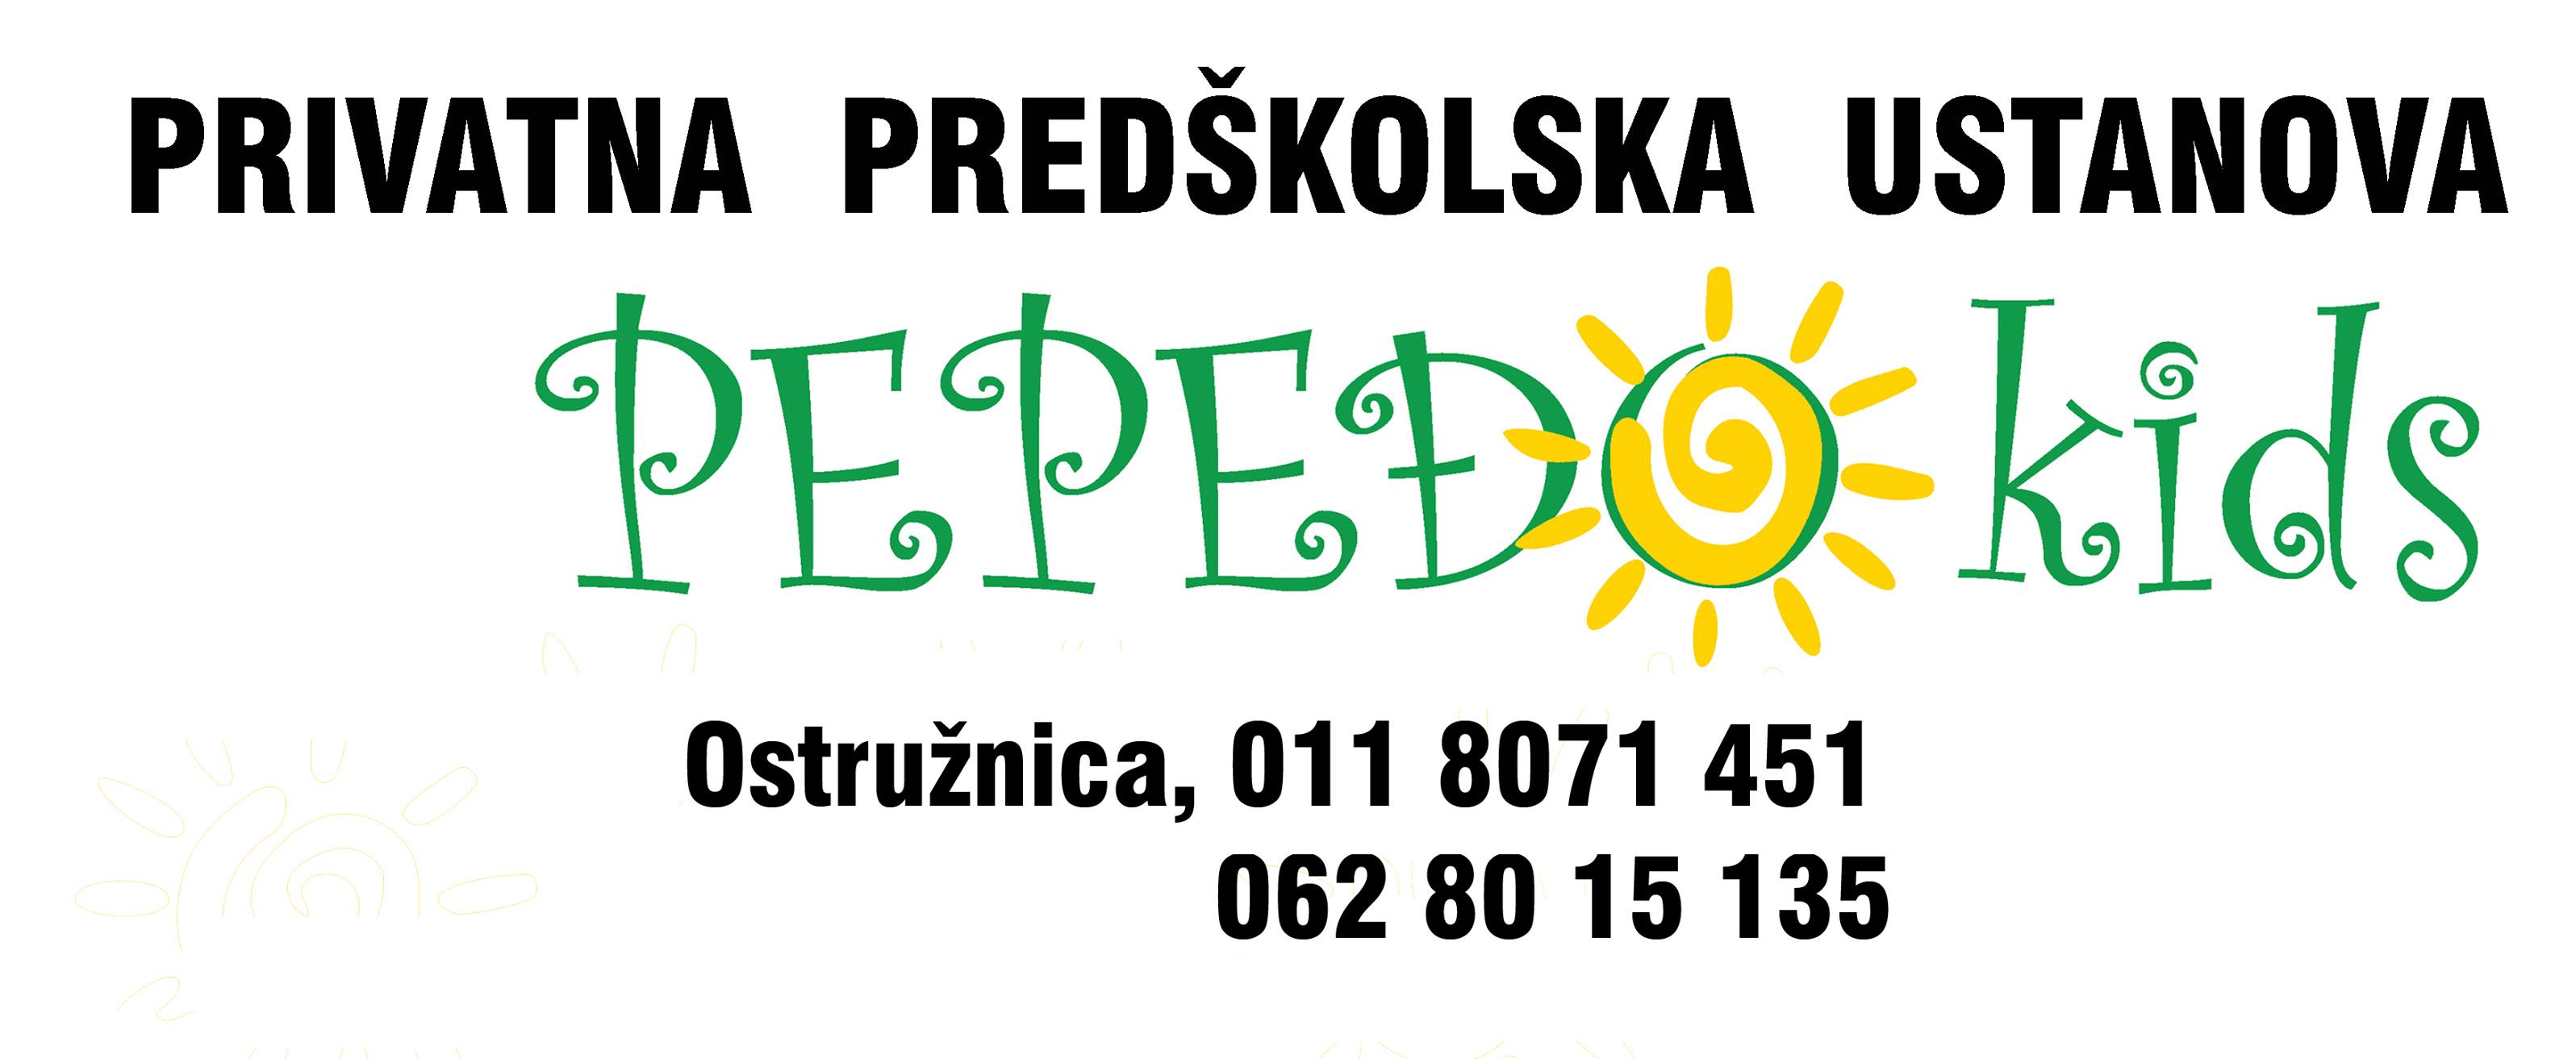 Vrtić Pepeđo Kids logo